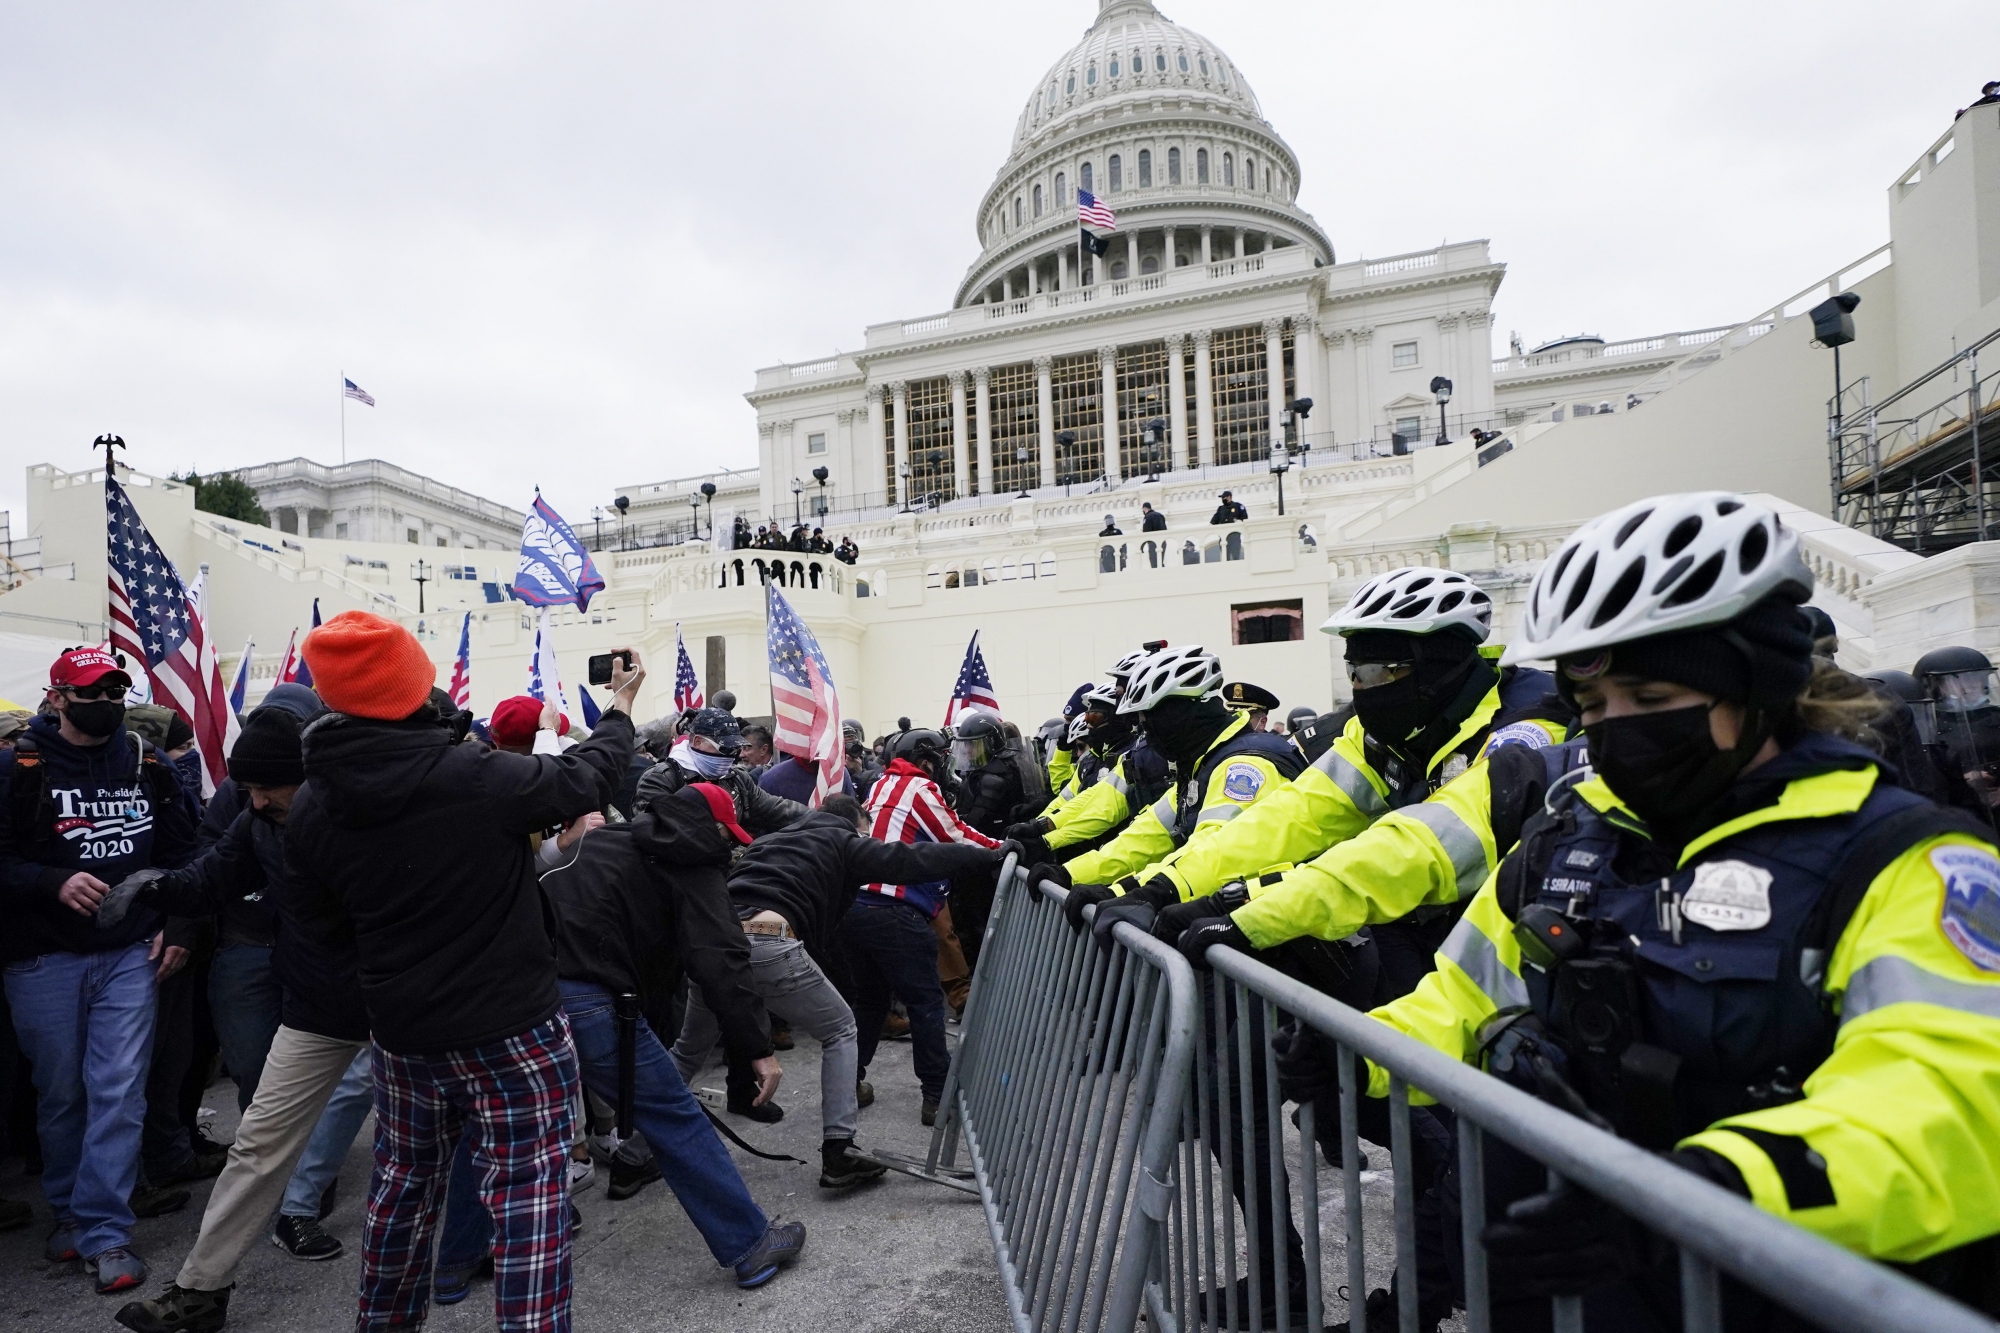 Les partisans de Trump, réunis par milliers à Washington, n’ont pas hésité à forcer les barrages de sécurité et à pénétrer dans le Capitole.